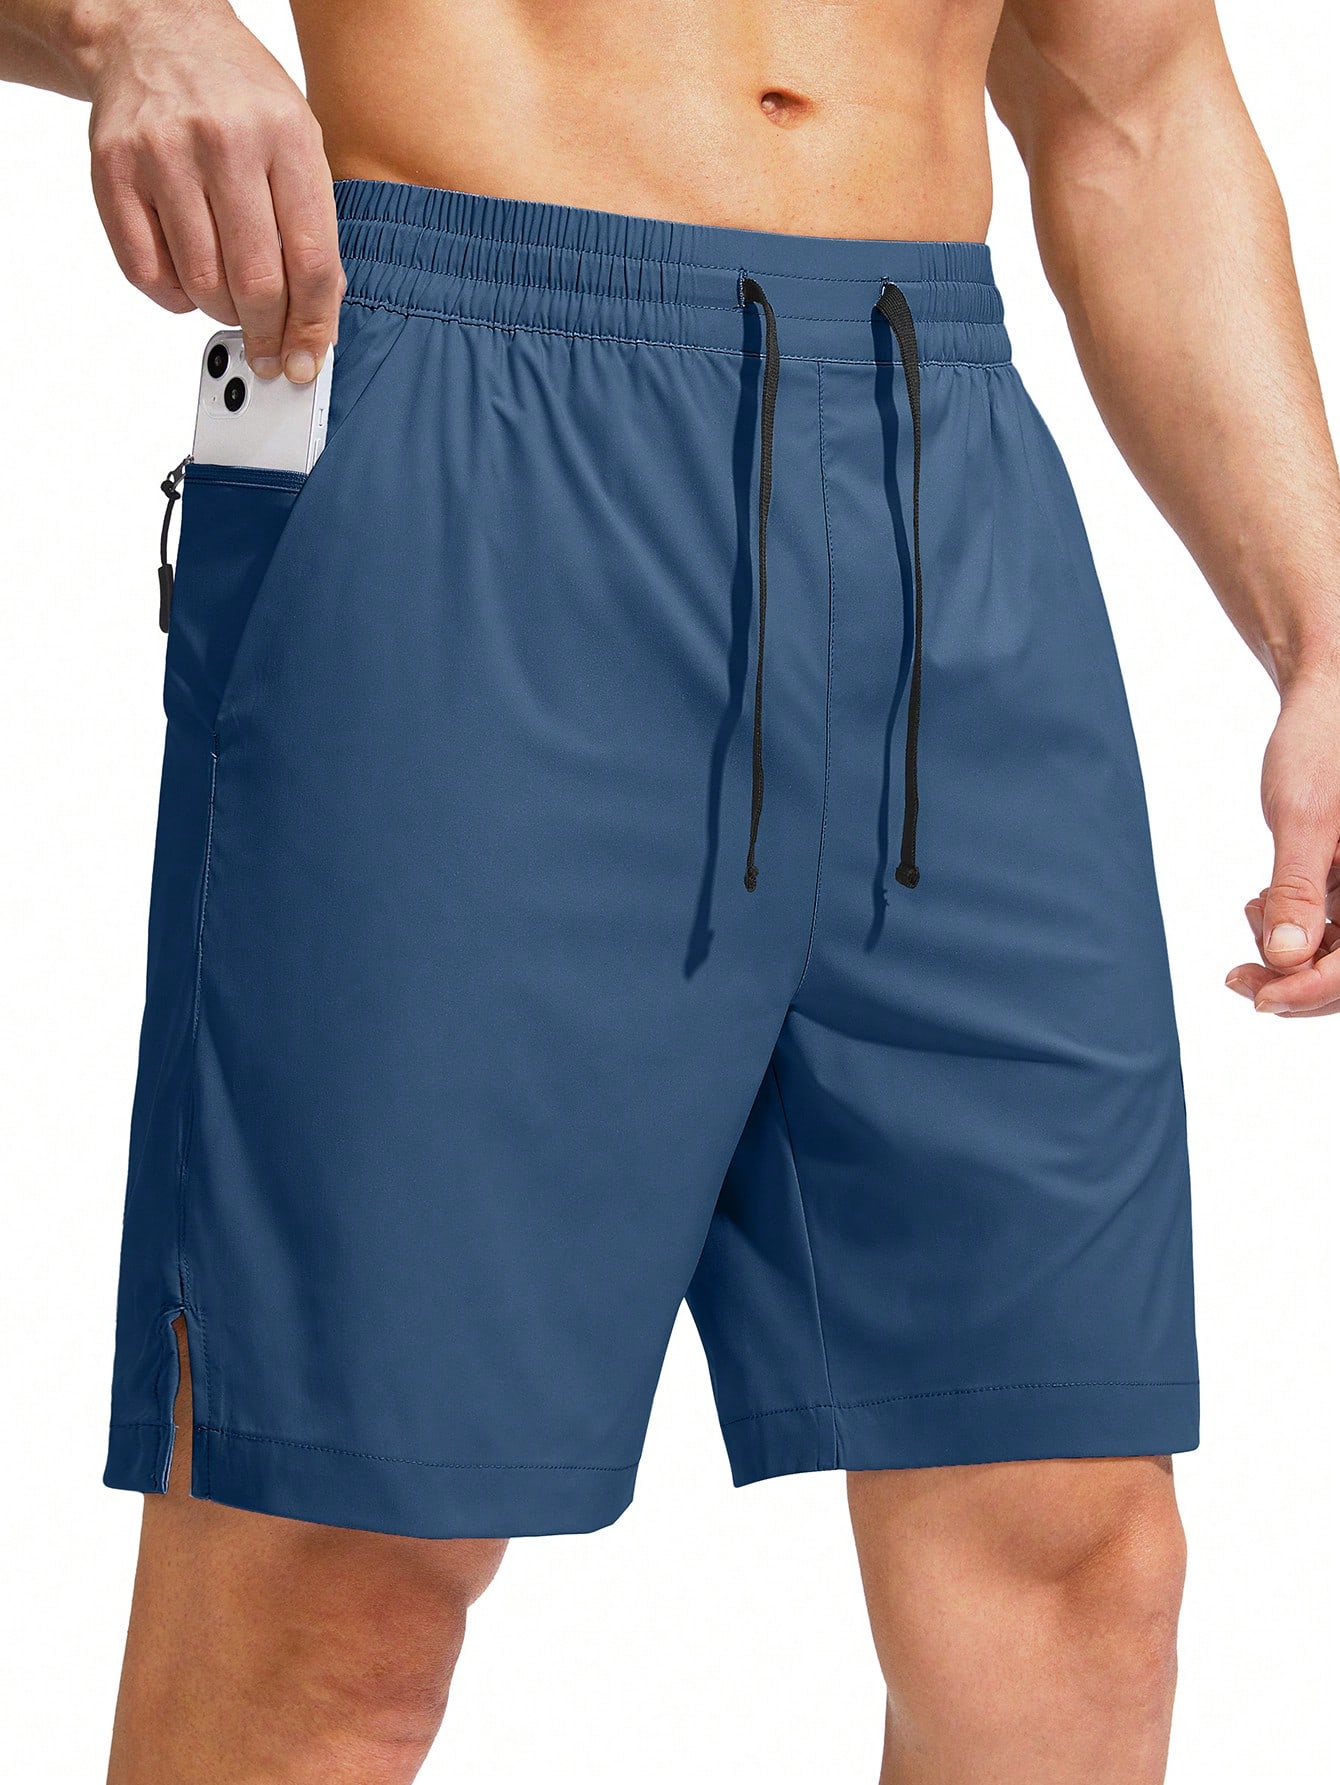 G Gradual G Gradual Мужские плавки Быстросохнущий купальный костюм Пляжные шорты для мужчин с карманами на молнии и сетчатой ​​подкладкой Серые шорты, бирюзовый синий фото